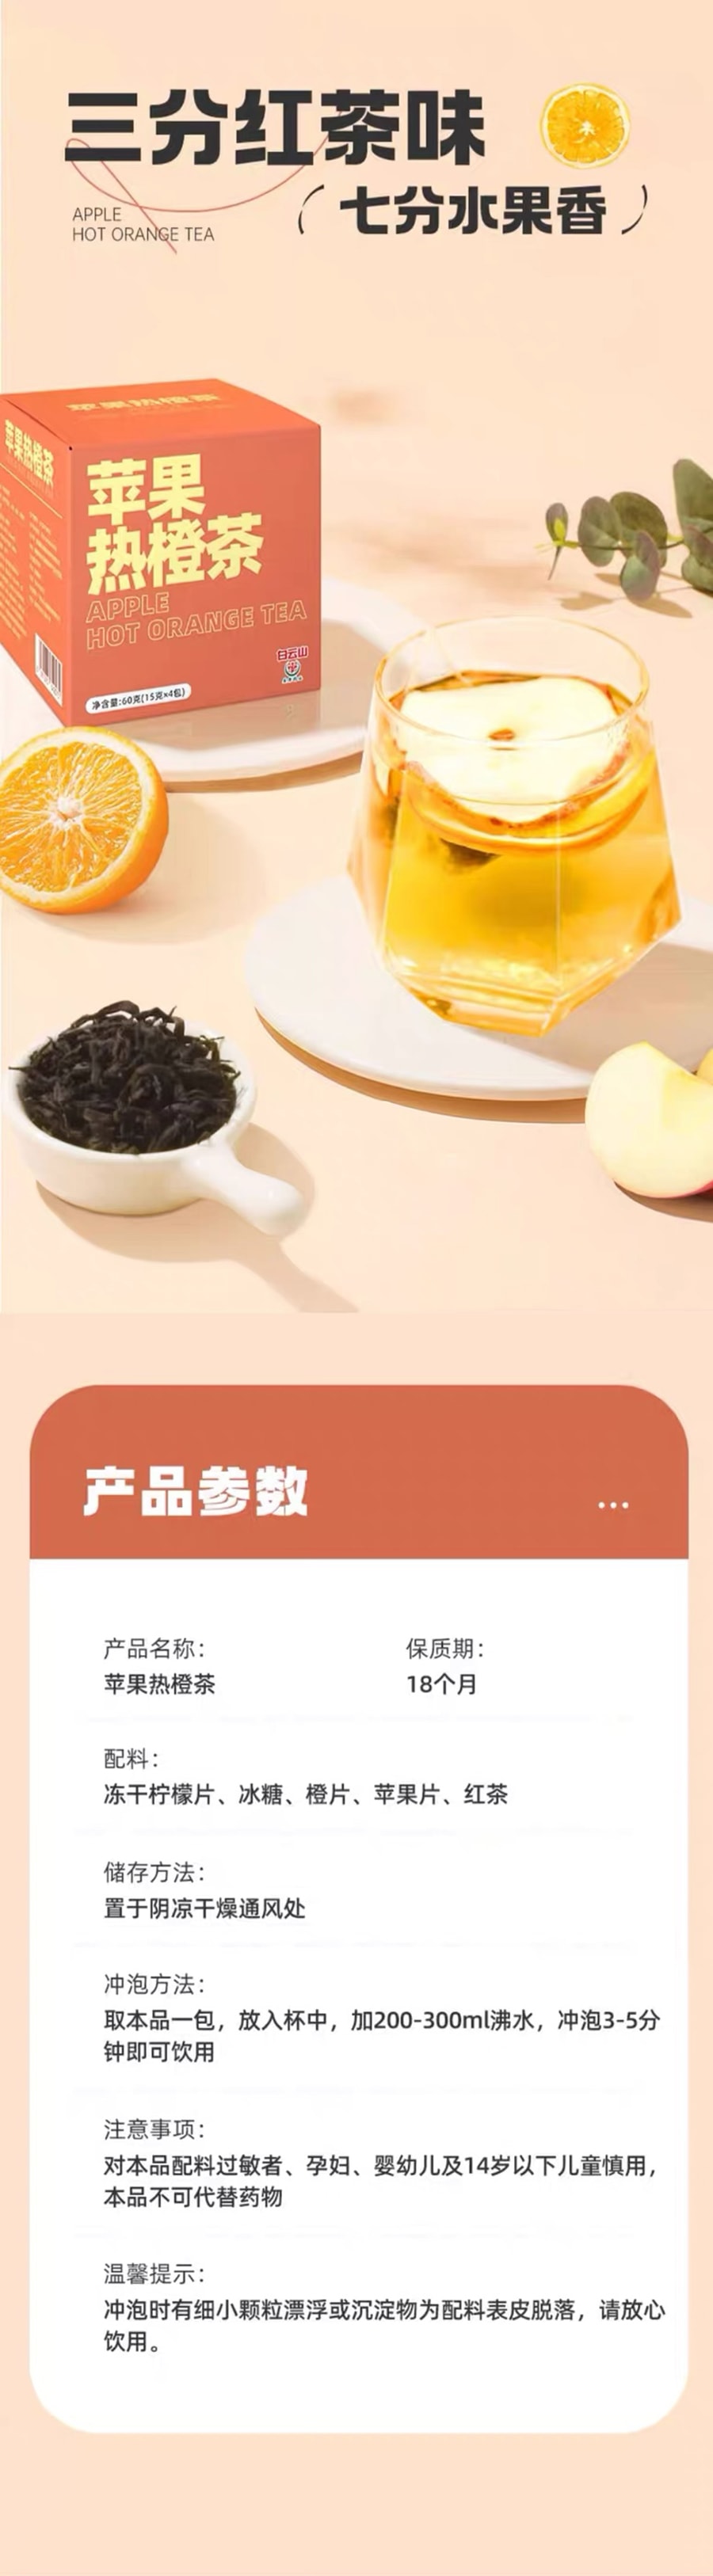 白云山 (秋冬热饮第一)苹果热橙茶  15g*10包 有它还愁不爱喝水?